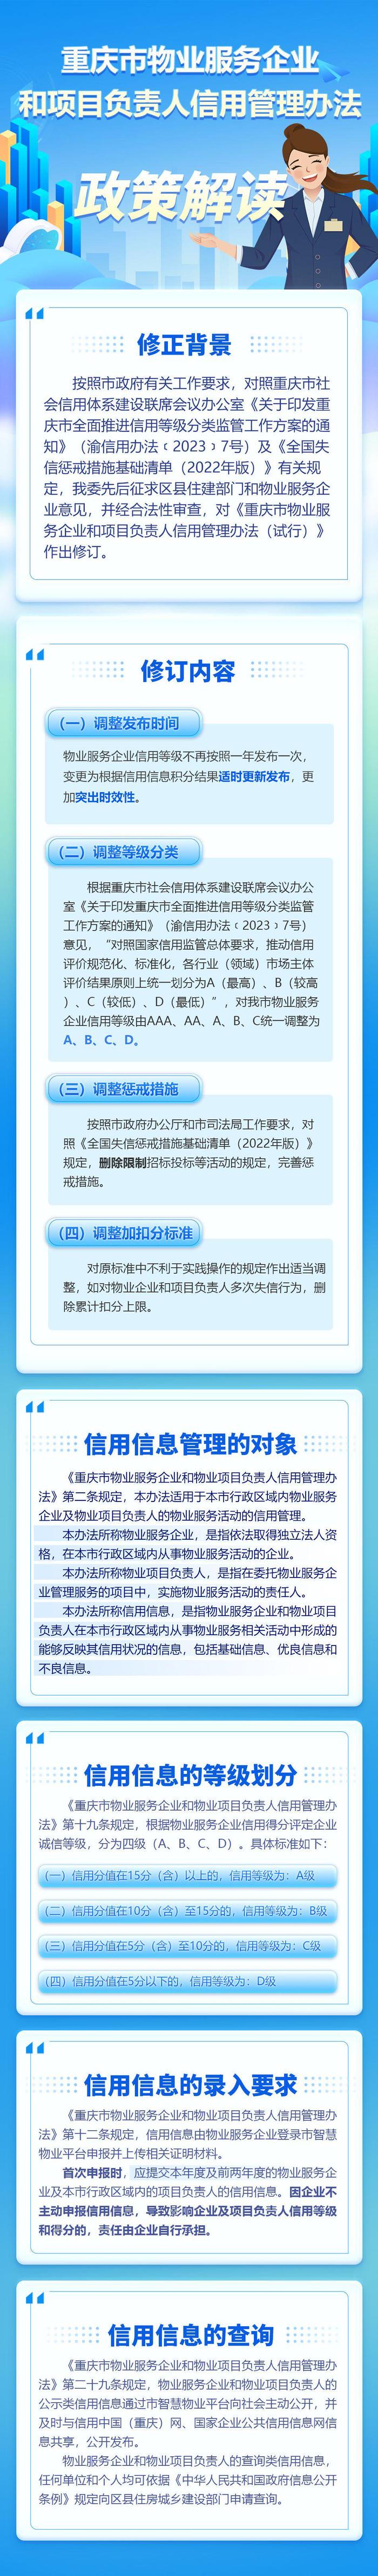 《重庆市物业服务企业和项目负责人信用管理办法》图文解读